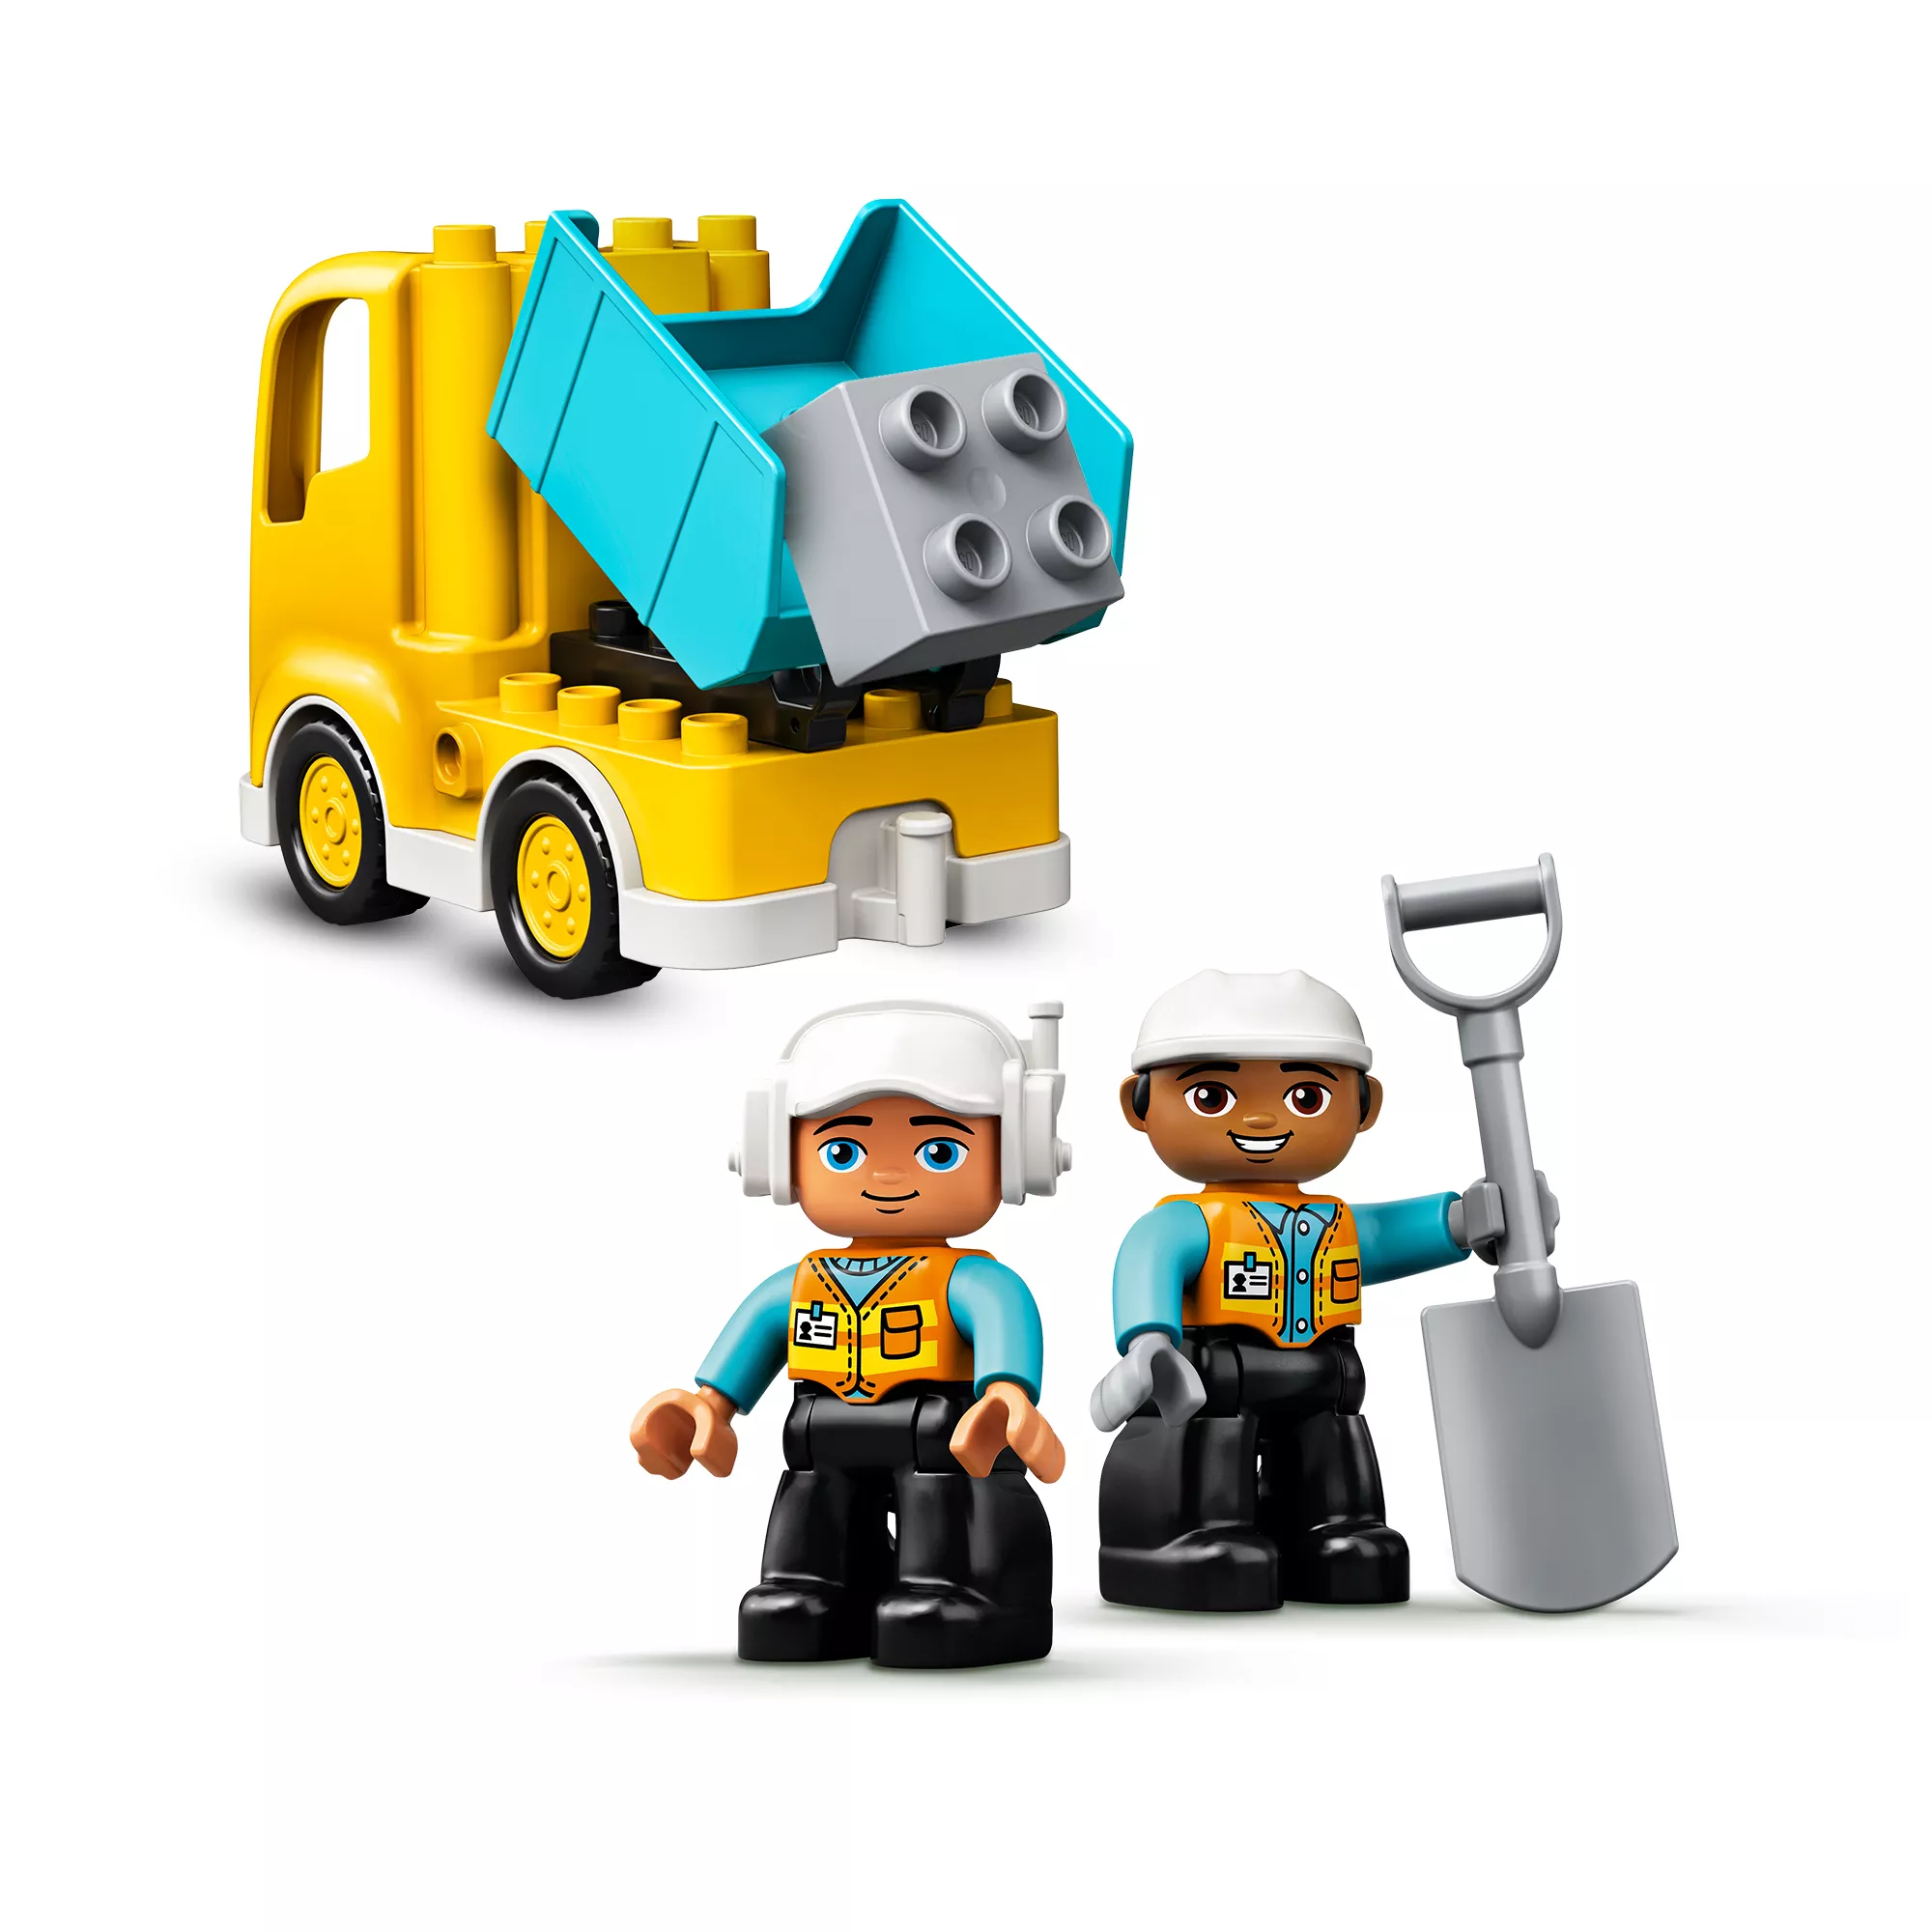 LEGO 10931 DUPLO Bagger und Laster